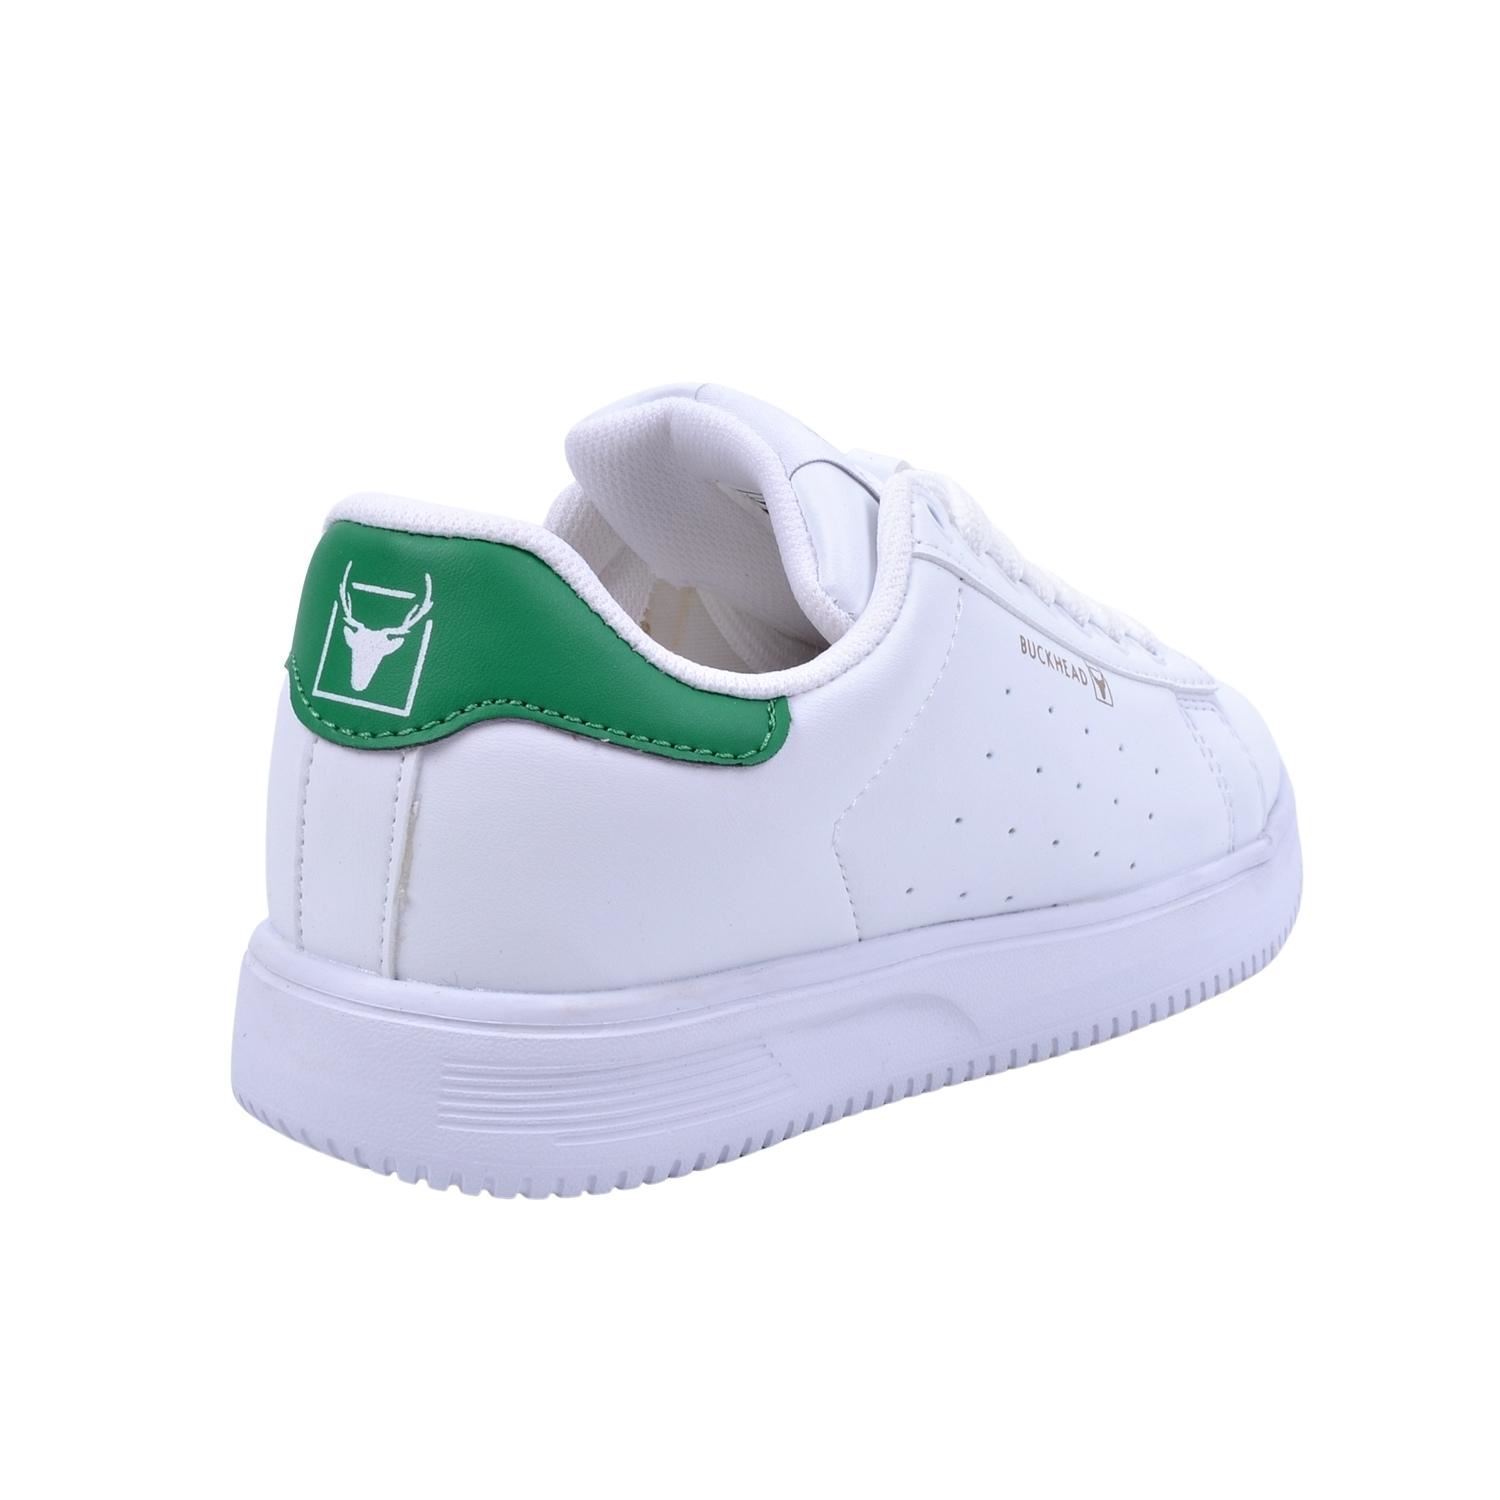 Buckhead 4156 Boston Beyaz Yeşil Unisex Spor Ayakkabı